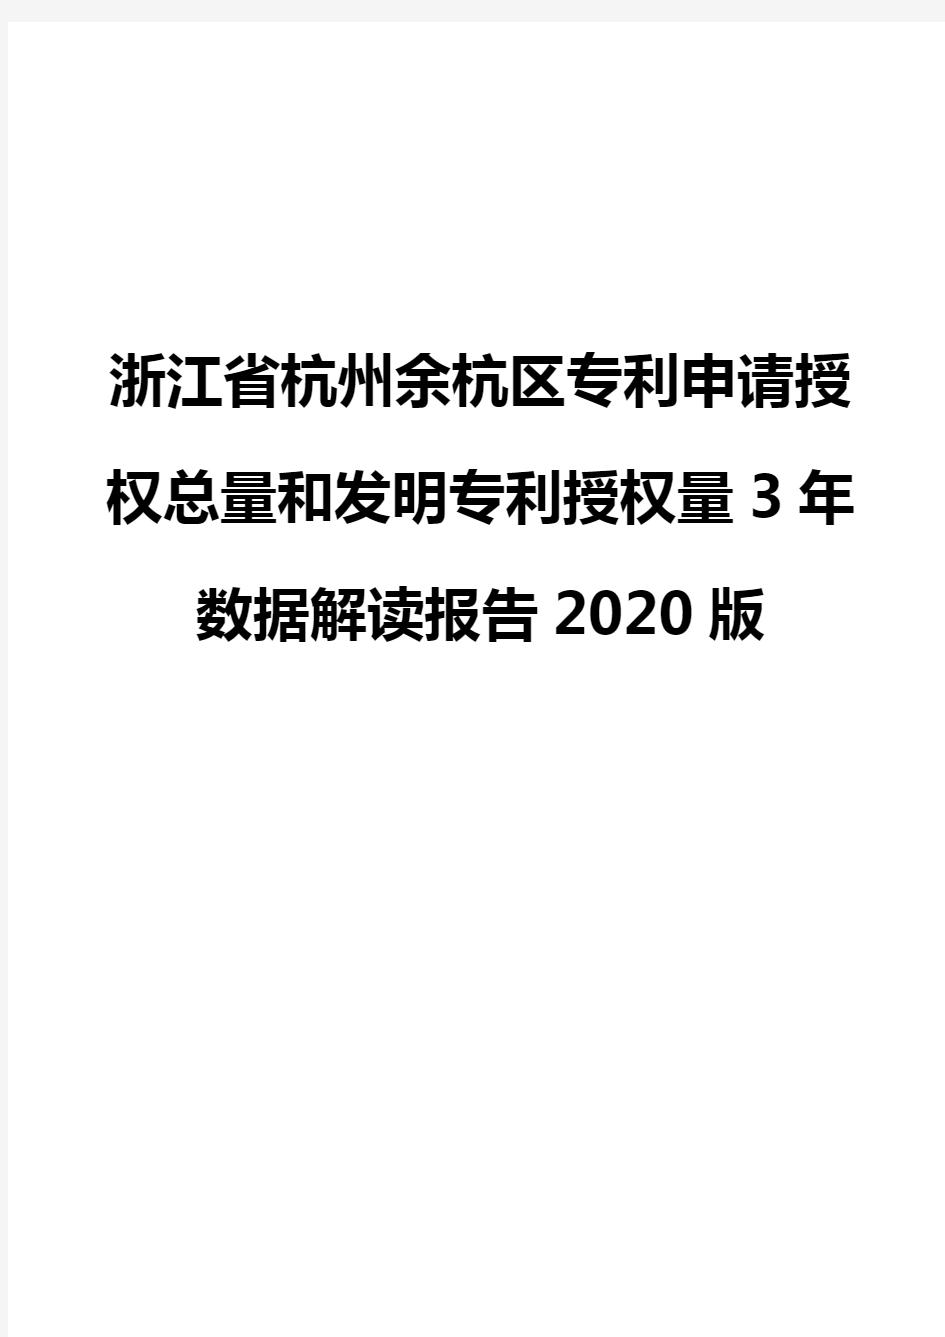 浙江省杭州余杭区专利申请授权总量和发明专利授权量3年数据解读报告2020版